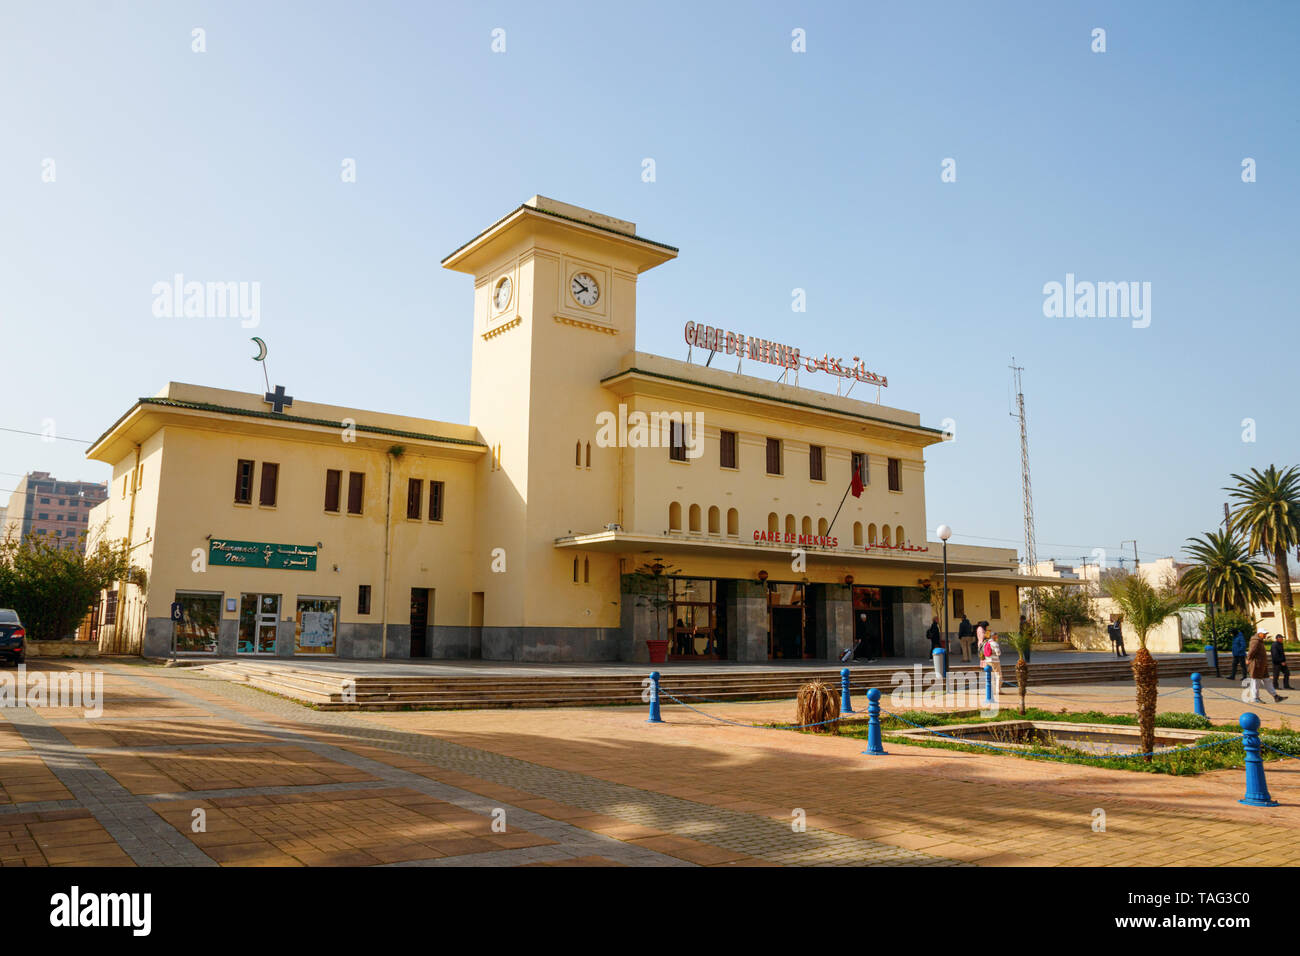 Place de la gare et l'entrée de la gare de Meknès s'appuyant sur un après-midi ensoleillé. Meknes, Maroc. Banque D'Images